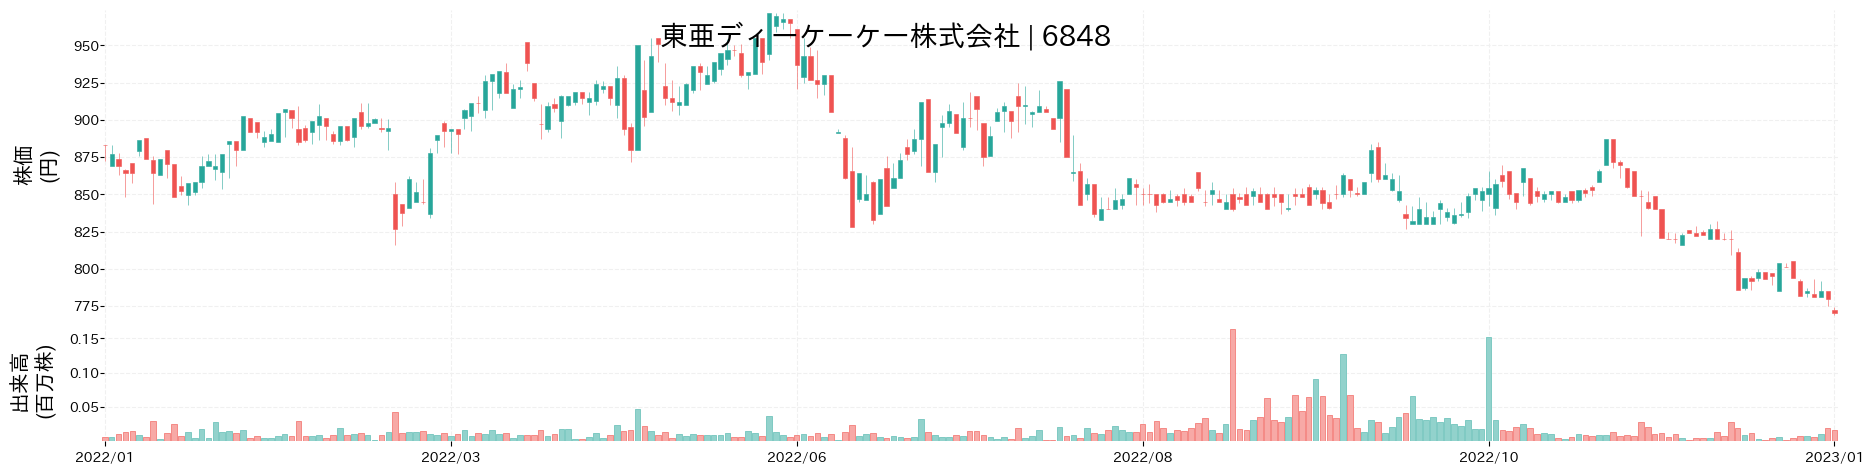 東亜ディーケーケーの株価推移(2022)